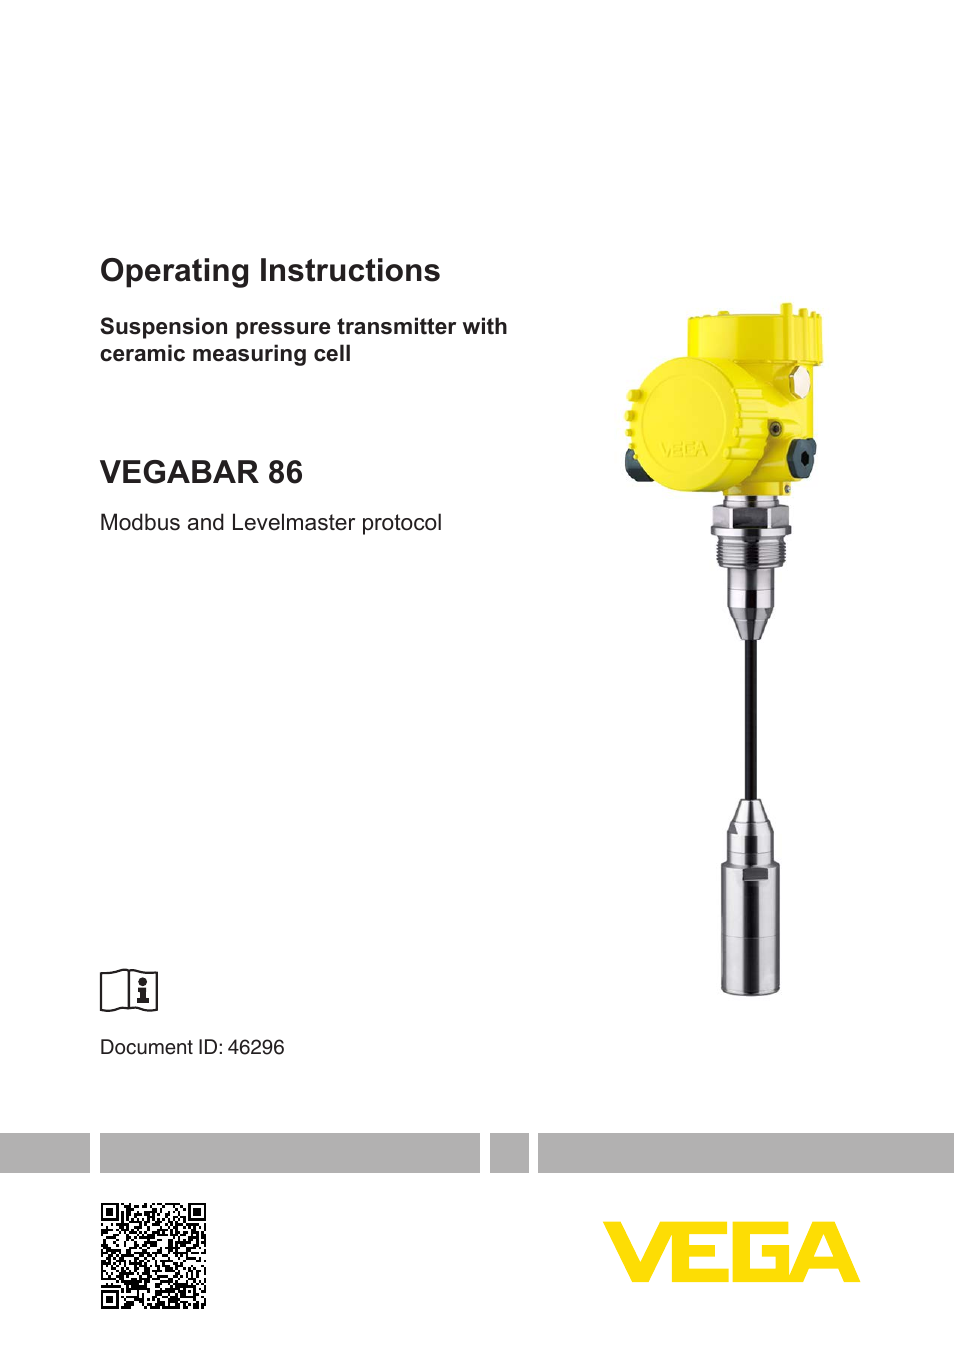 VEGABAR 86 Modbus and Levelmaster protocol - Operating Instructions